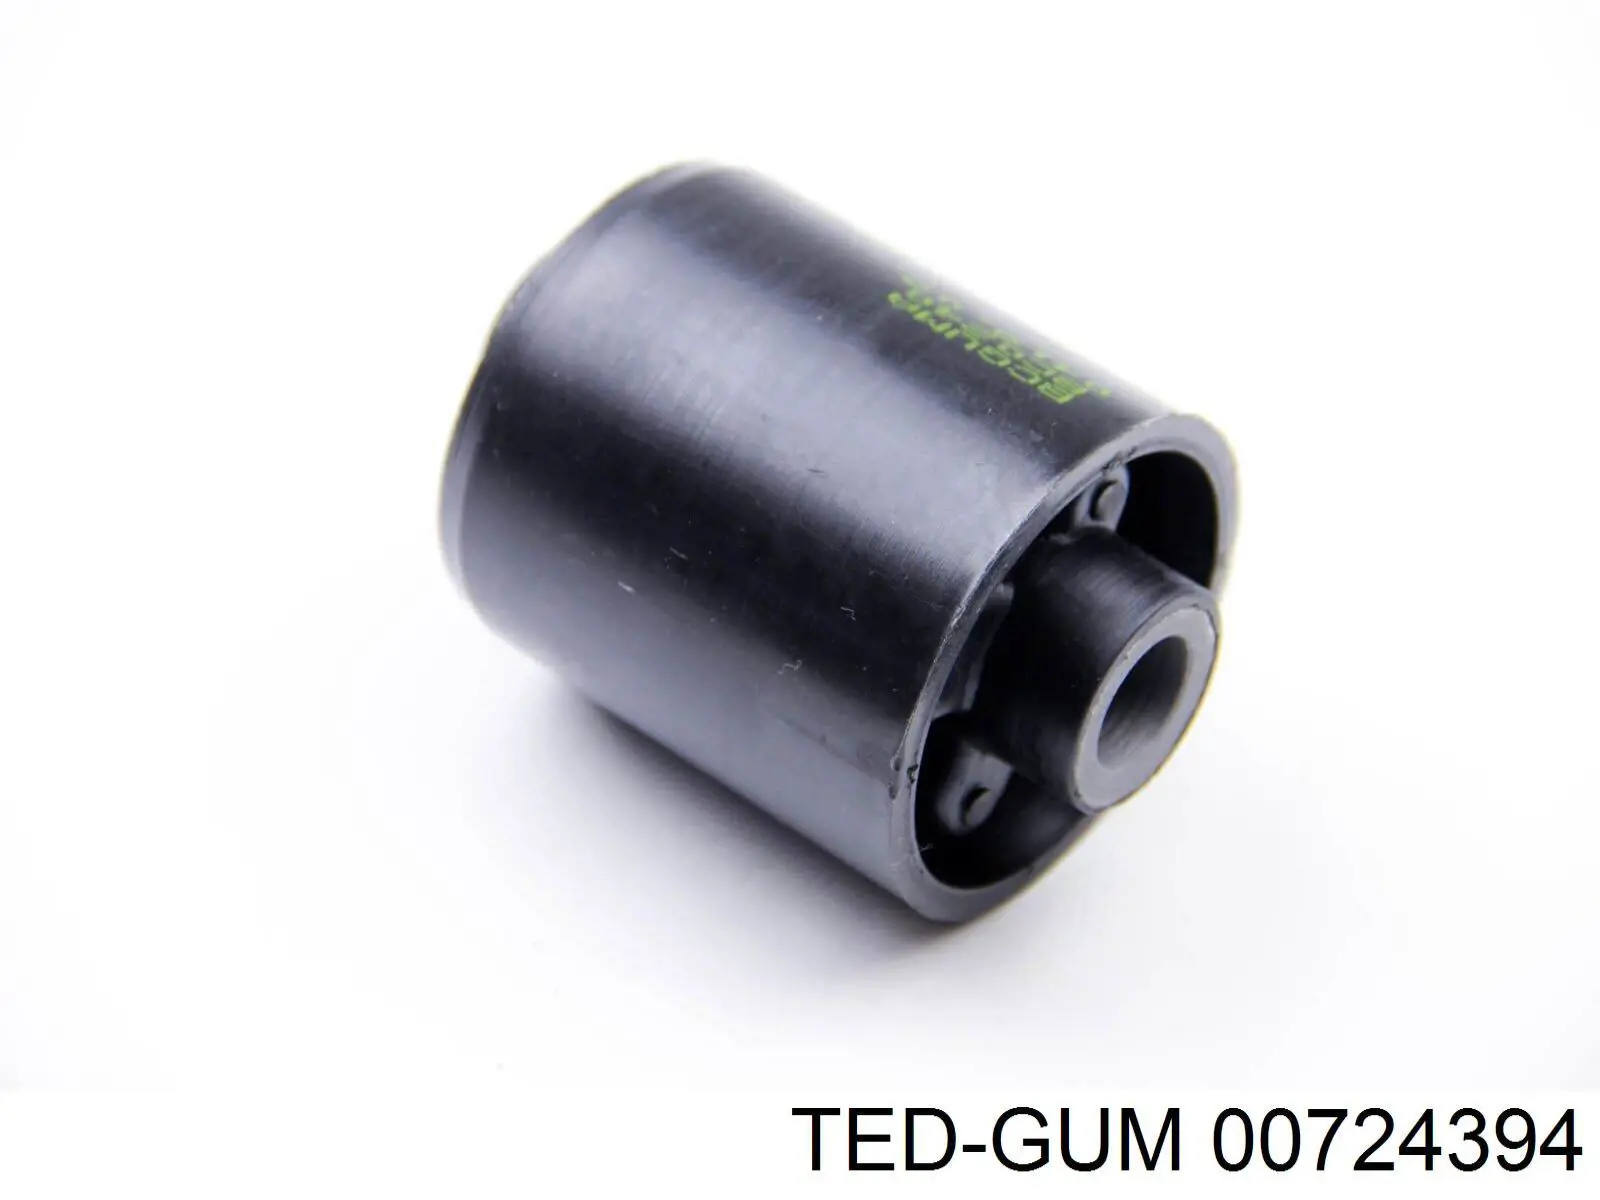 00724394 Ted-gum soporte, motor, trasero, silentblock